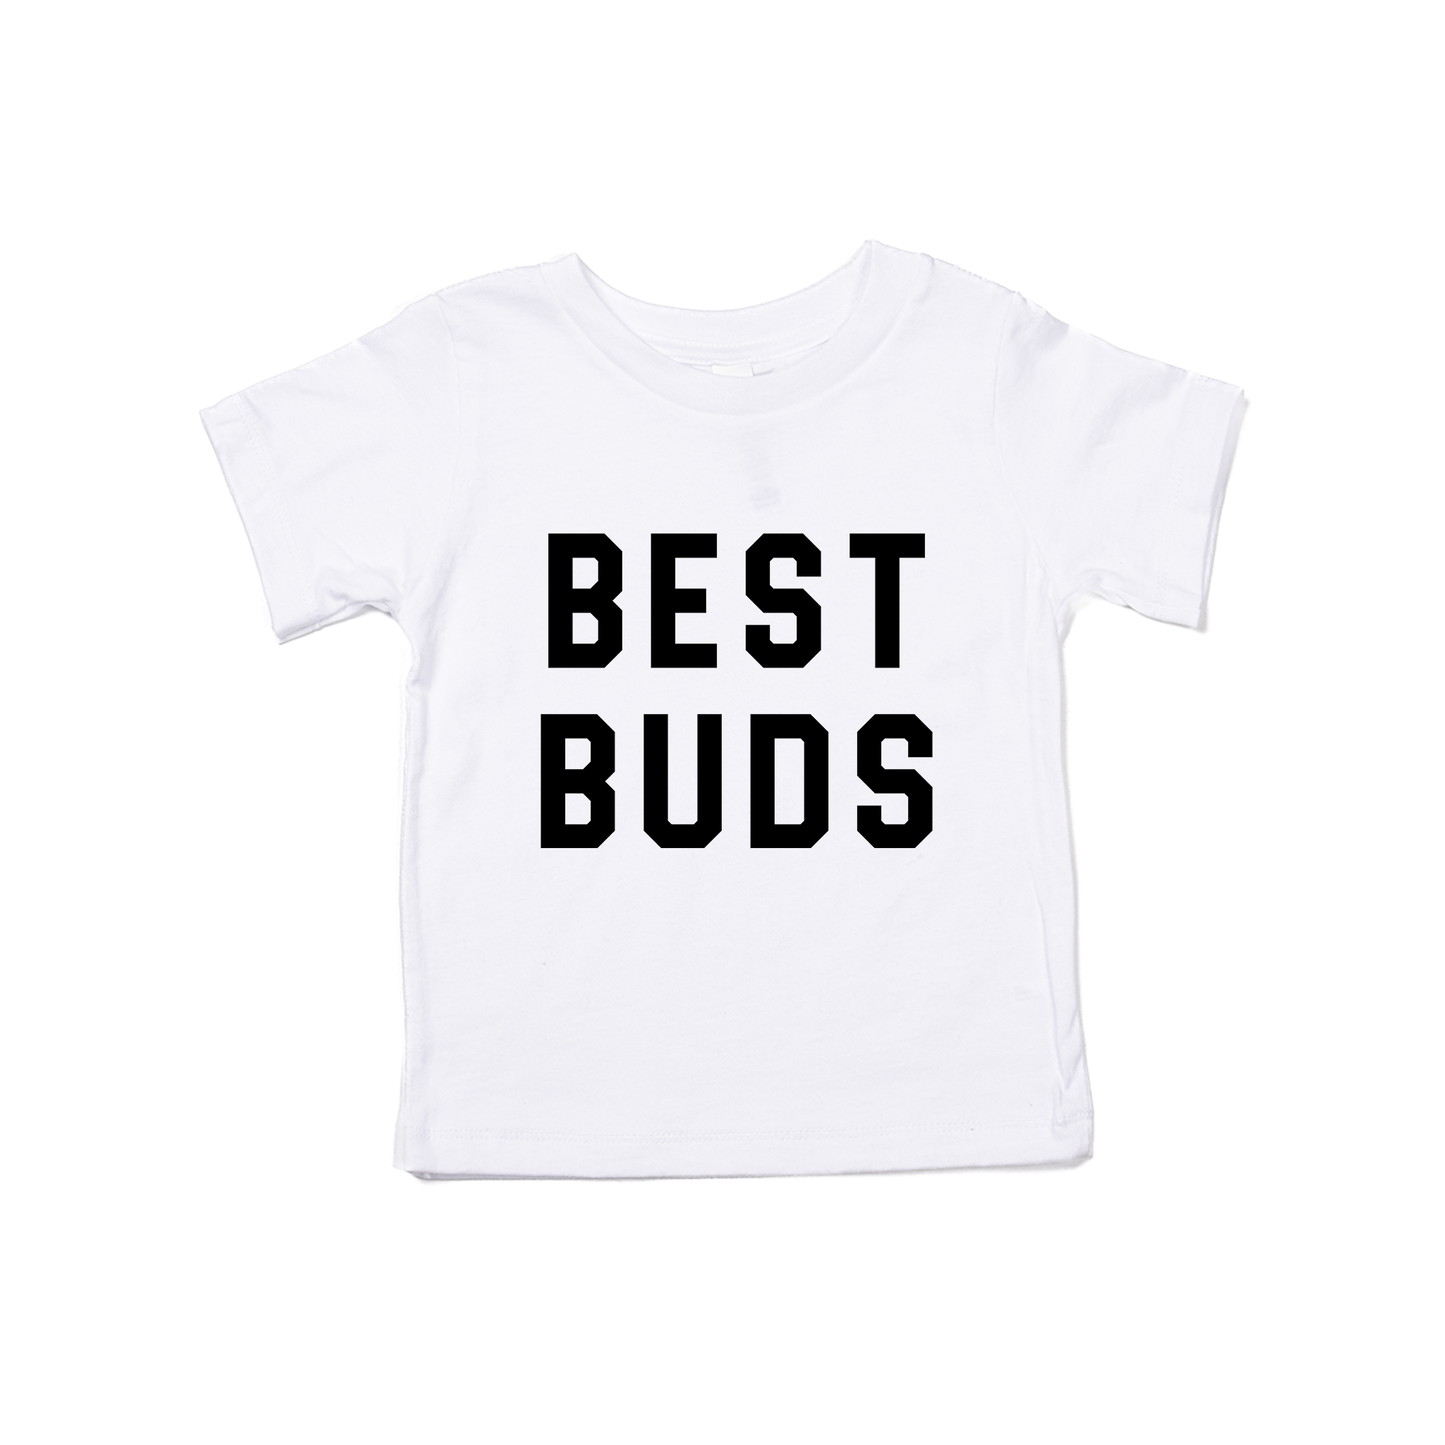 Best Buds (Black) - Kids Tee (White)